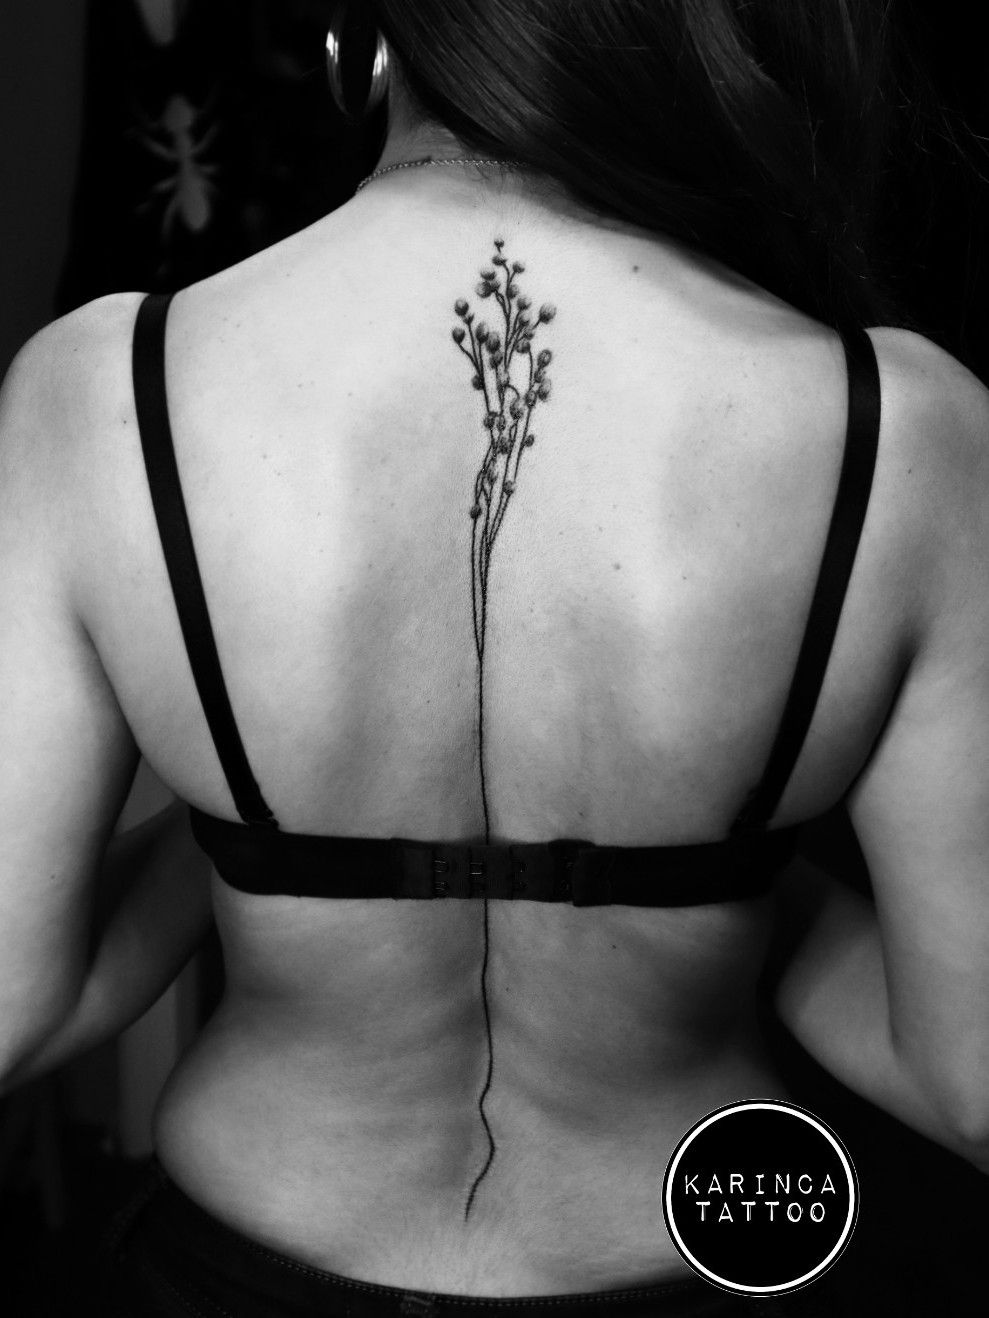 Tattoo uploaded by Bahadır Cem Börekcioğlu • 🍃 Instagram: @karincatattoo  All of them are my works #karincatattoo #flower #botanical #tattoo #tattoos  #tattoodesign #tattooartist #tattooer #tattoostudio #tattoolove #tattooart  #istanbul #turkey #dövme